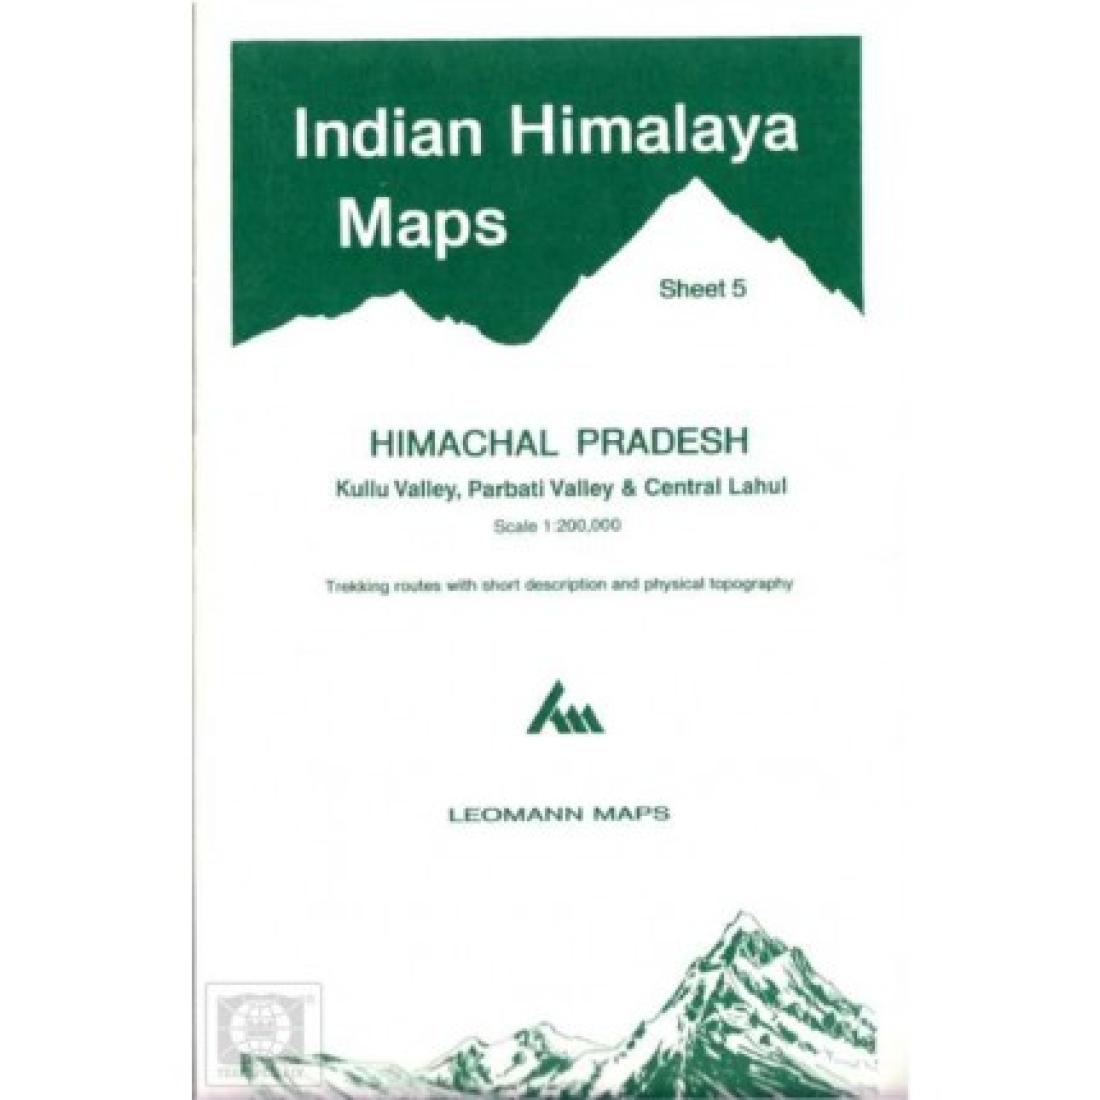 Indian Himalaya, Himachal Pradesh sheet 5 - Kulu, Parbati, Central Lahul